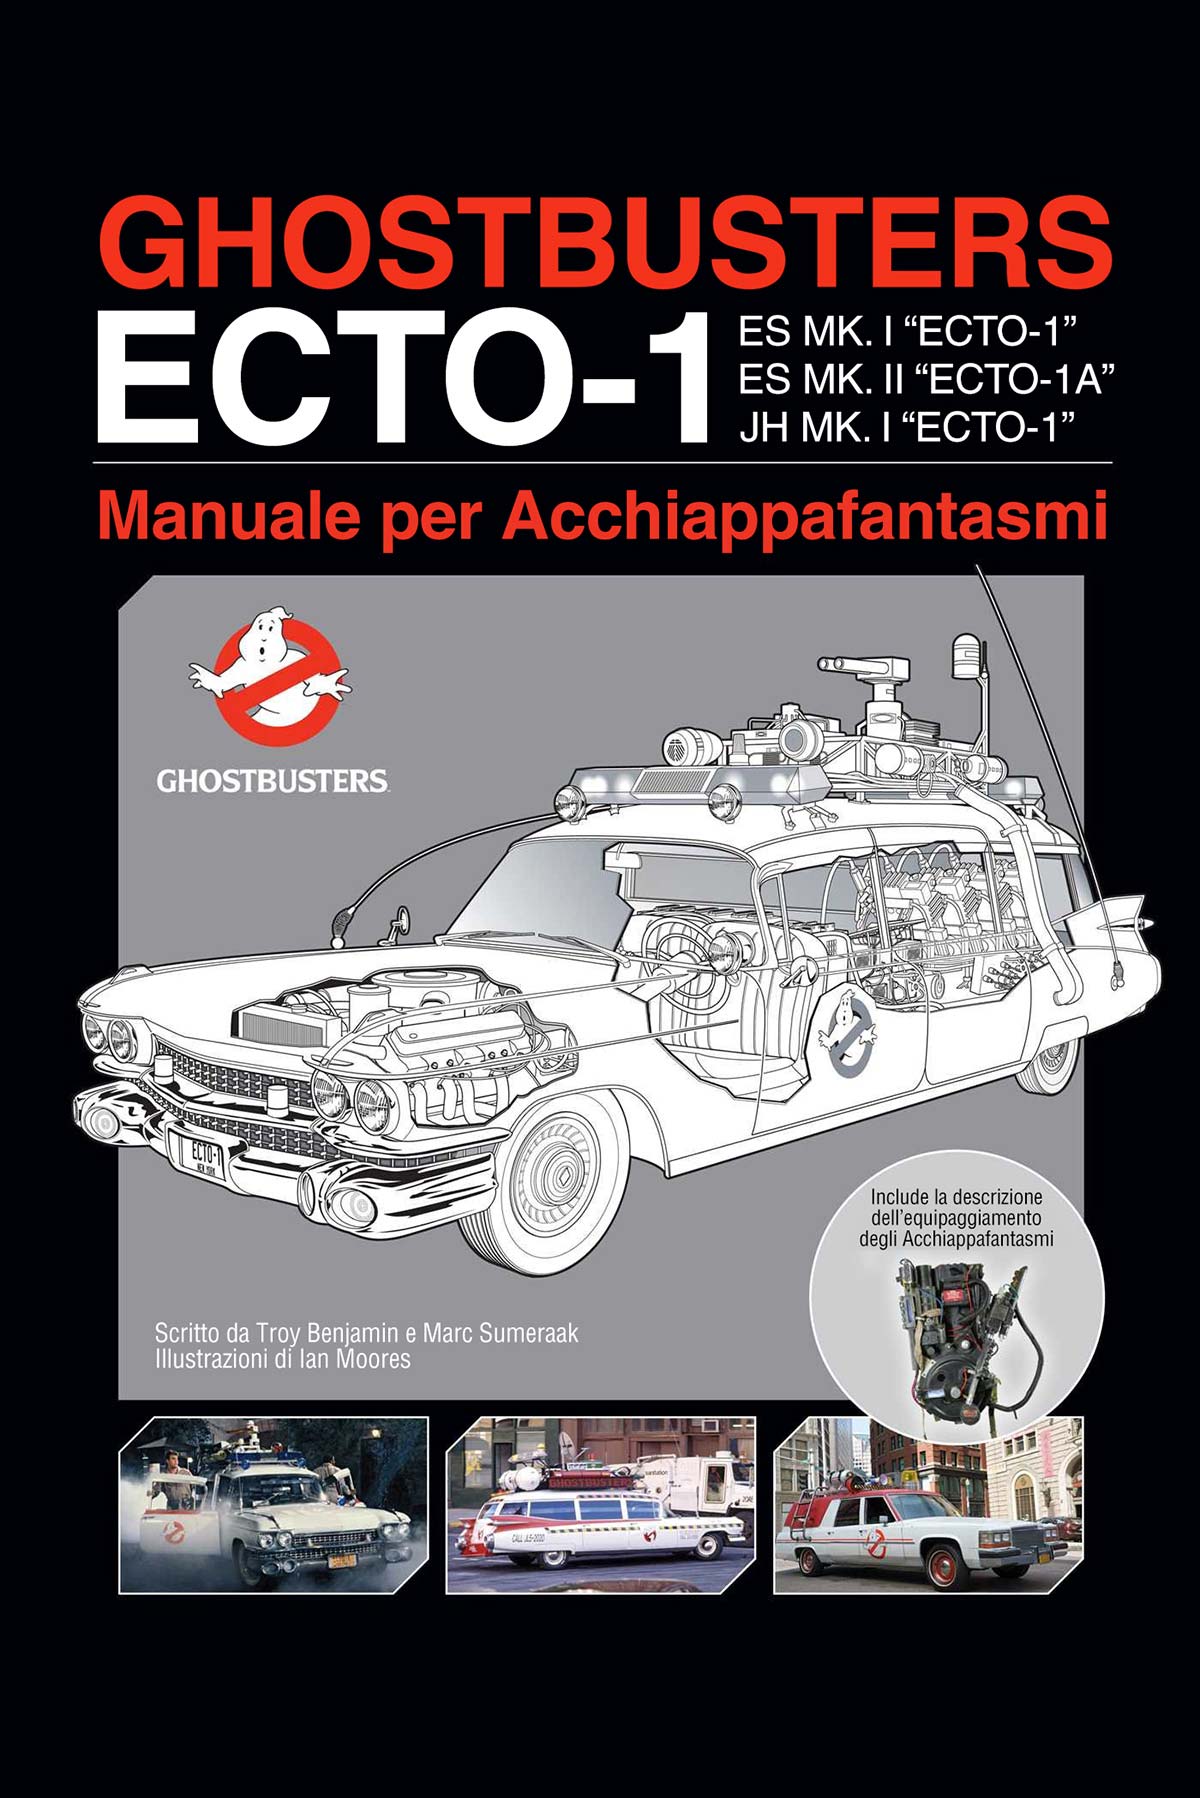 Libri Ghostbusters Ecto Vol 01 - Manuale Per Acchiappafantasmi NUOVO SIGILLATO, EDIZIONE DEL 30/11/2021 SUBITO DISPONIBILE